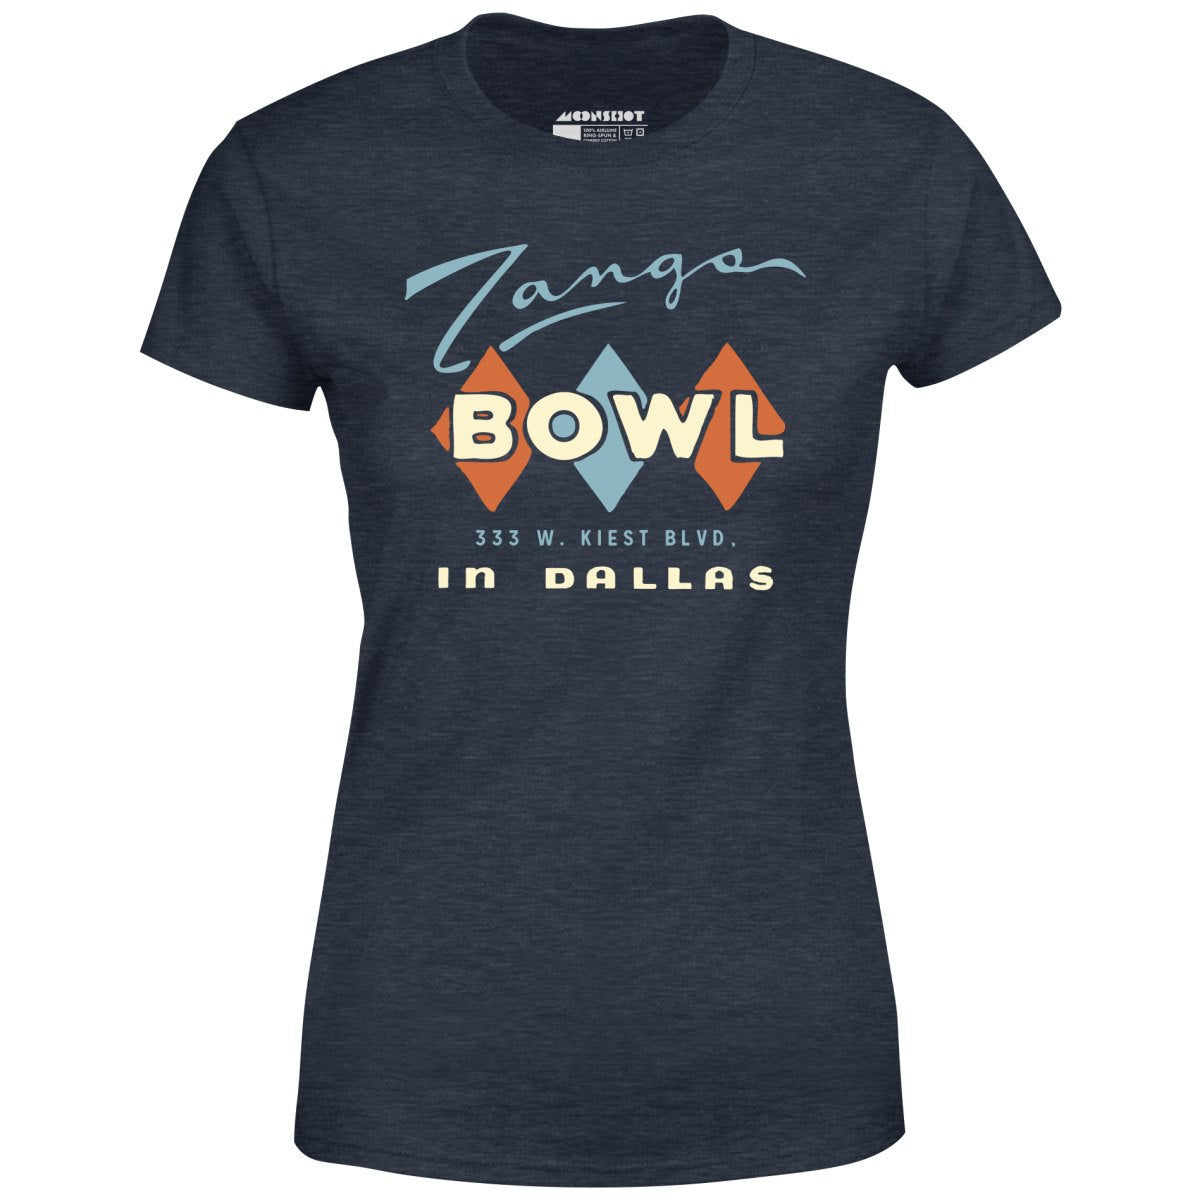 Zangs Bowl - Dallas, TX - Vintage Bowling Alley - Women's T-Shirt